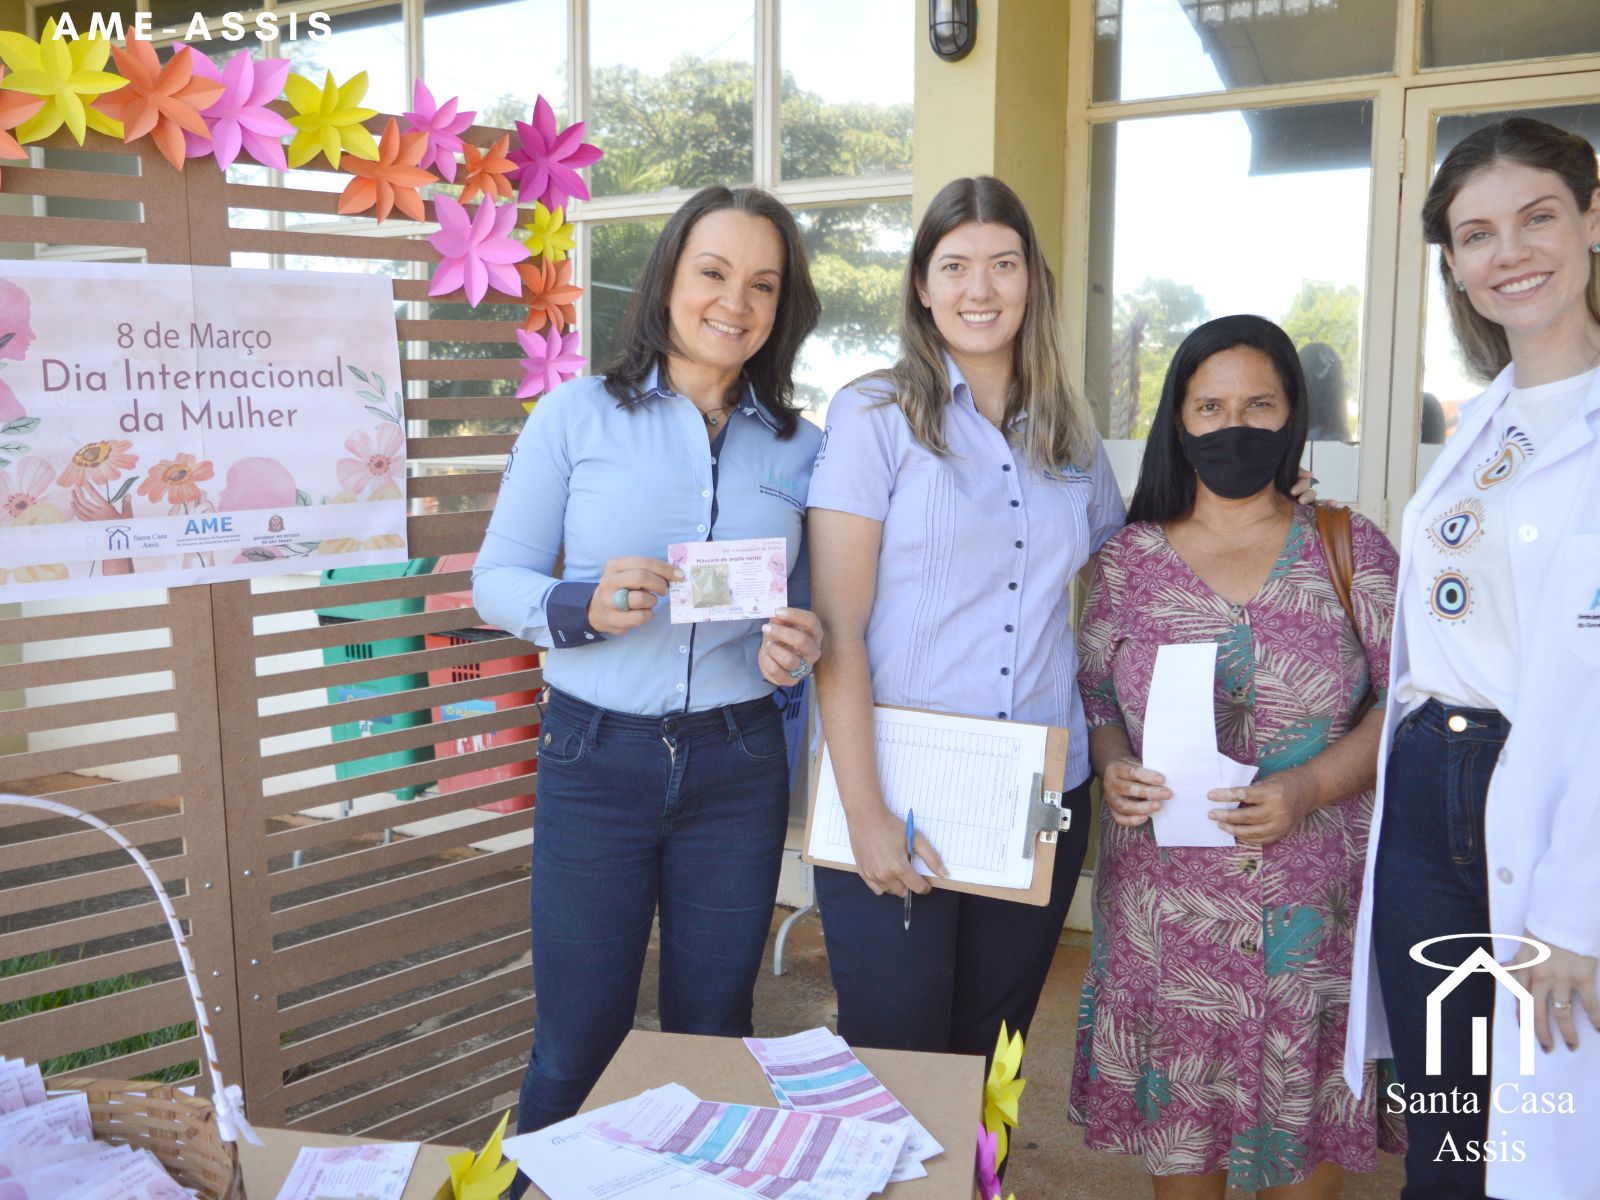 Gestão Hospitalar e Ambulatorial da Santa Casa de Assis realiza Dia de Beleza em homenagem ao Dia Internacional da Mulher